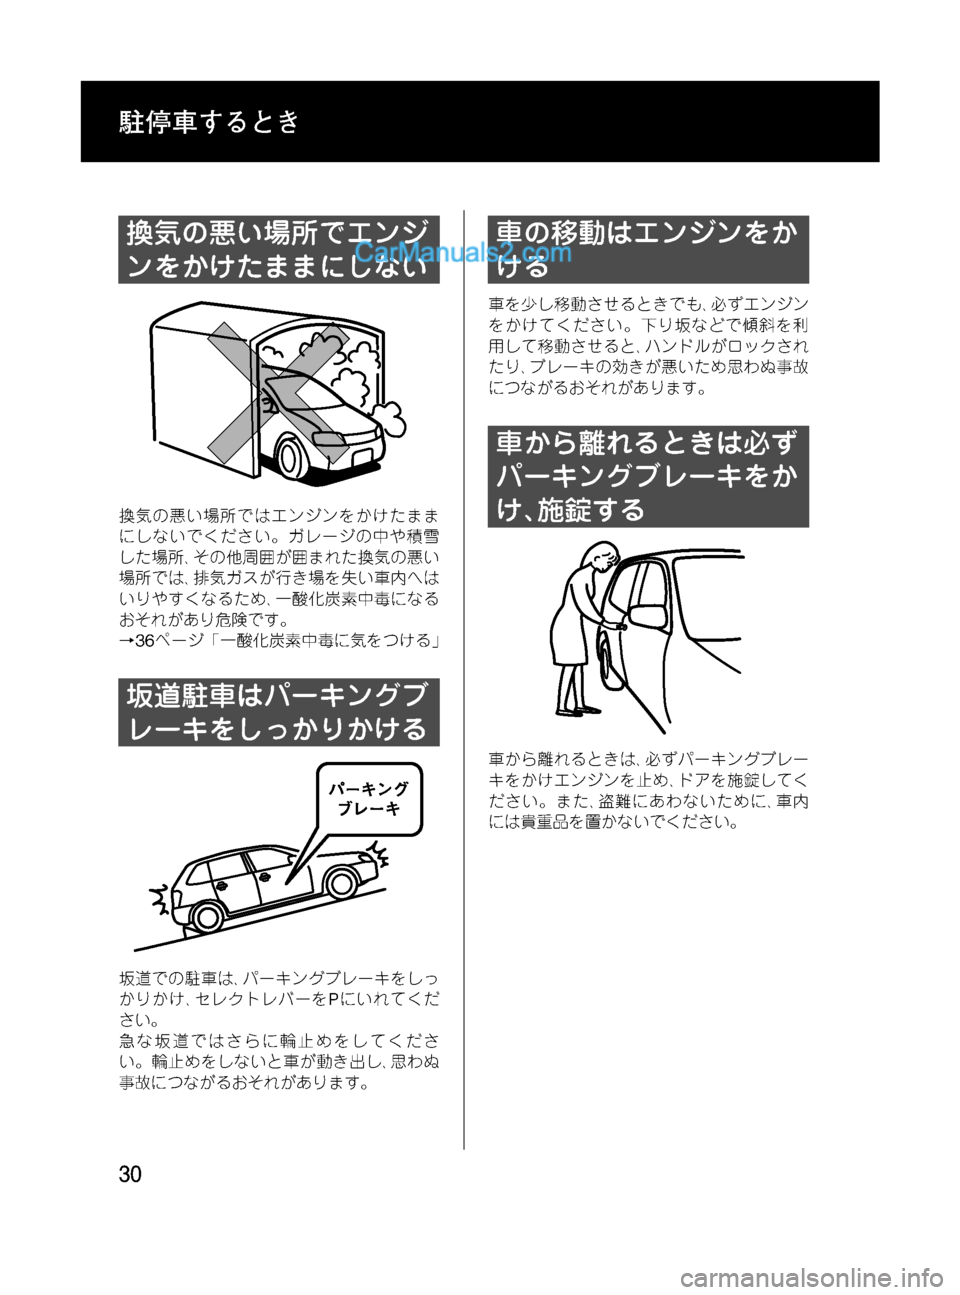 MAZDA MODEL VERISA 2007  ベリーサ｜取扱説明書 (in Japanese) Black plate (30,1)
換気の悪い場所でエンジ
ンをかけたままにしない
換気の悪い場所ではエンジンをかけたまま
にしないでください。ガレージの中や積�